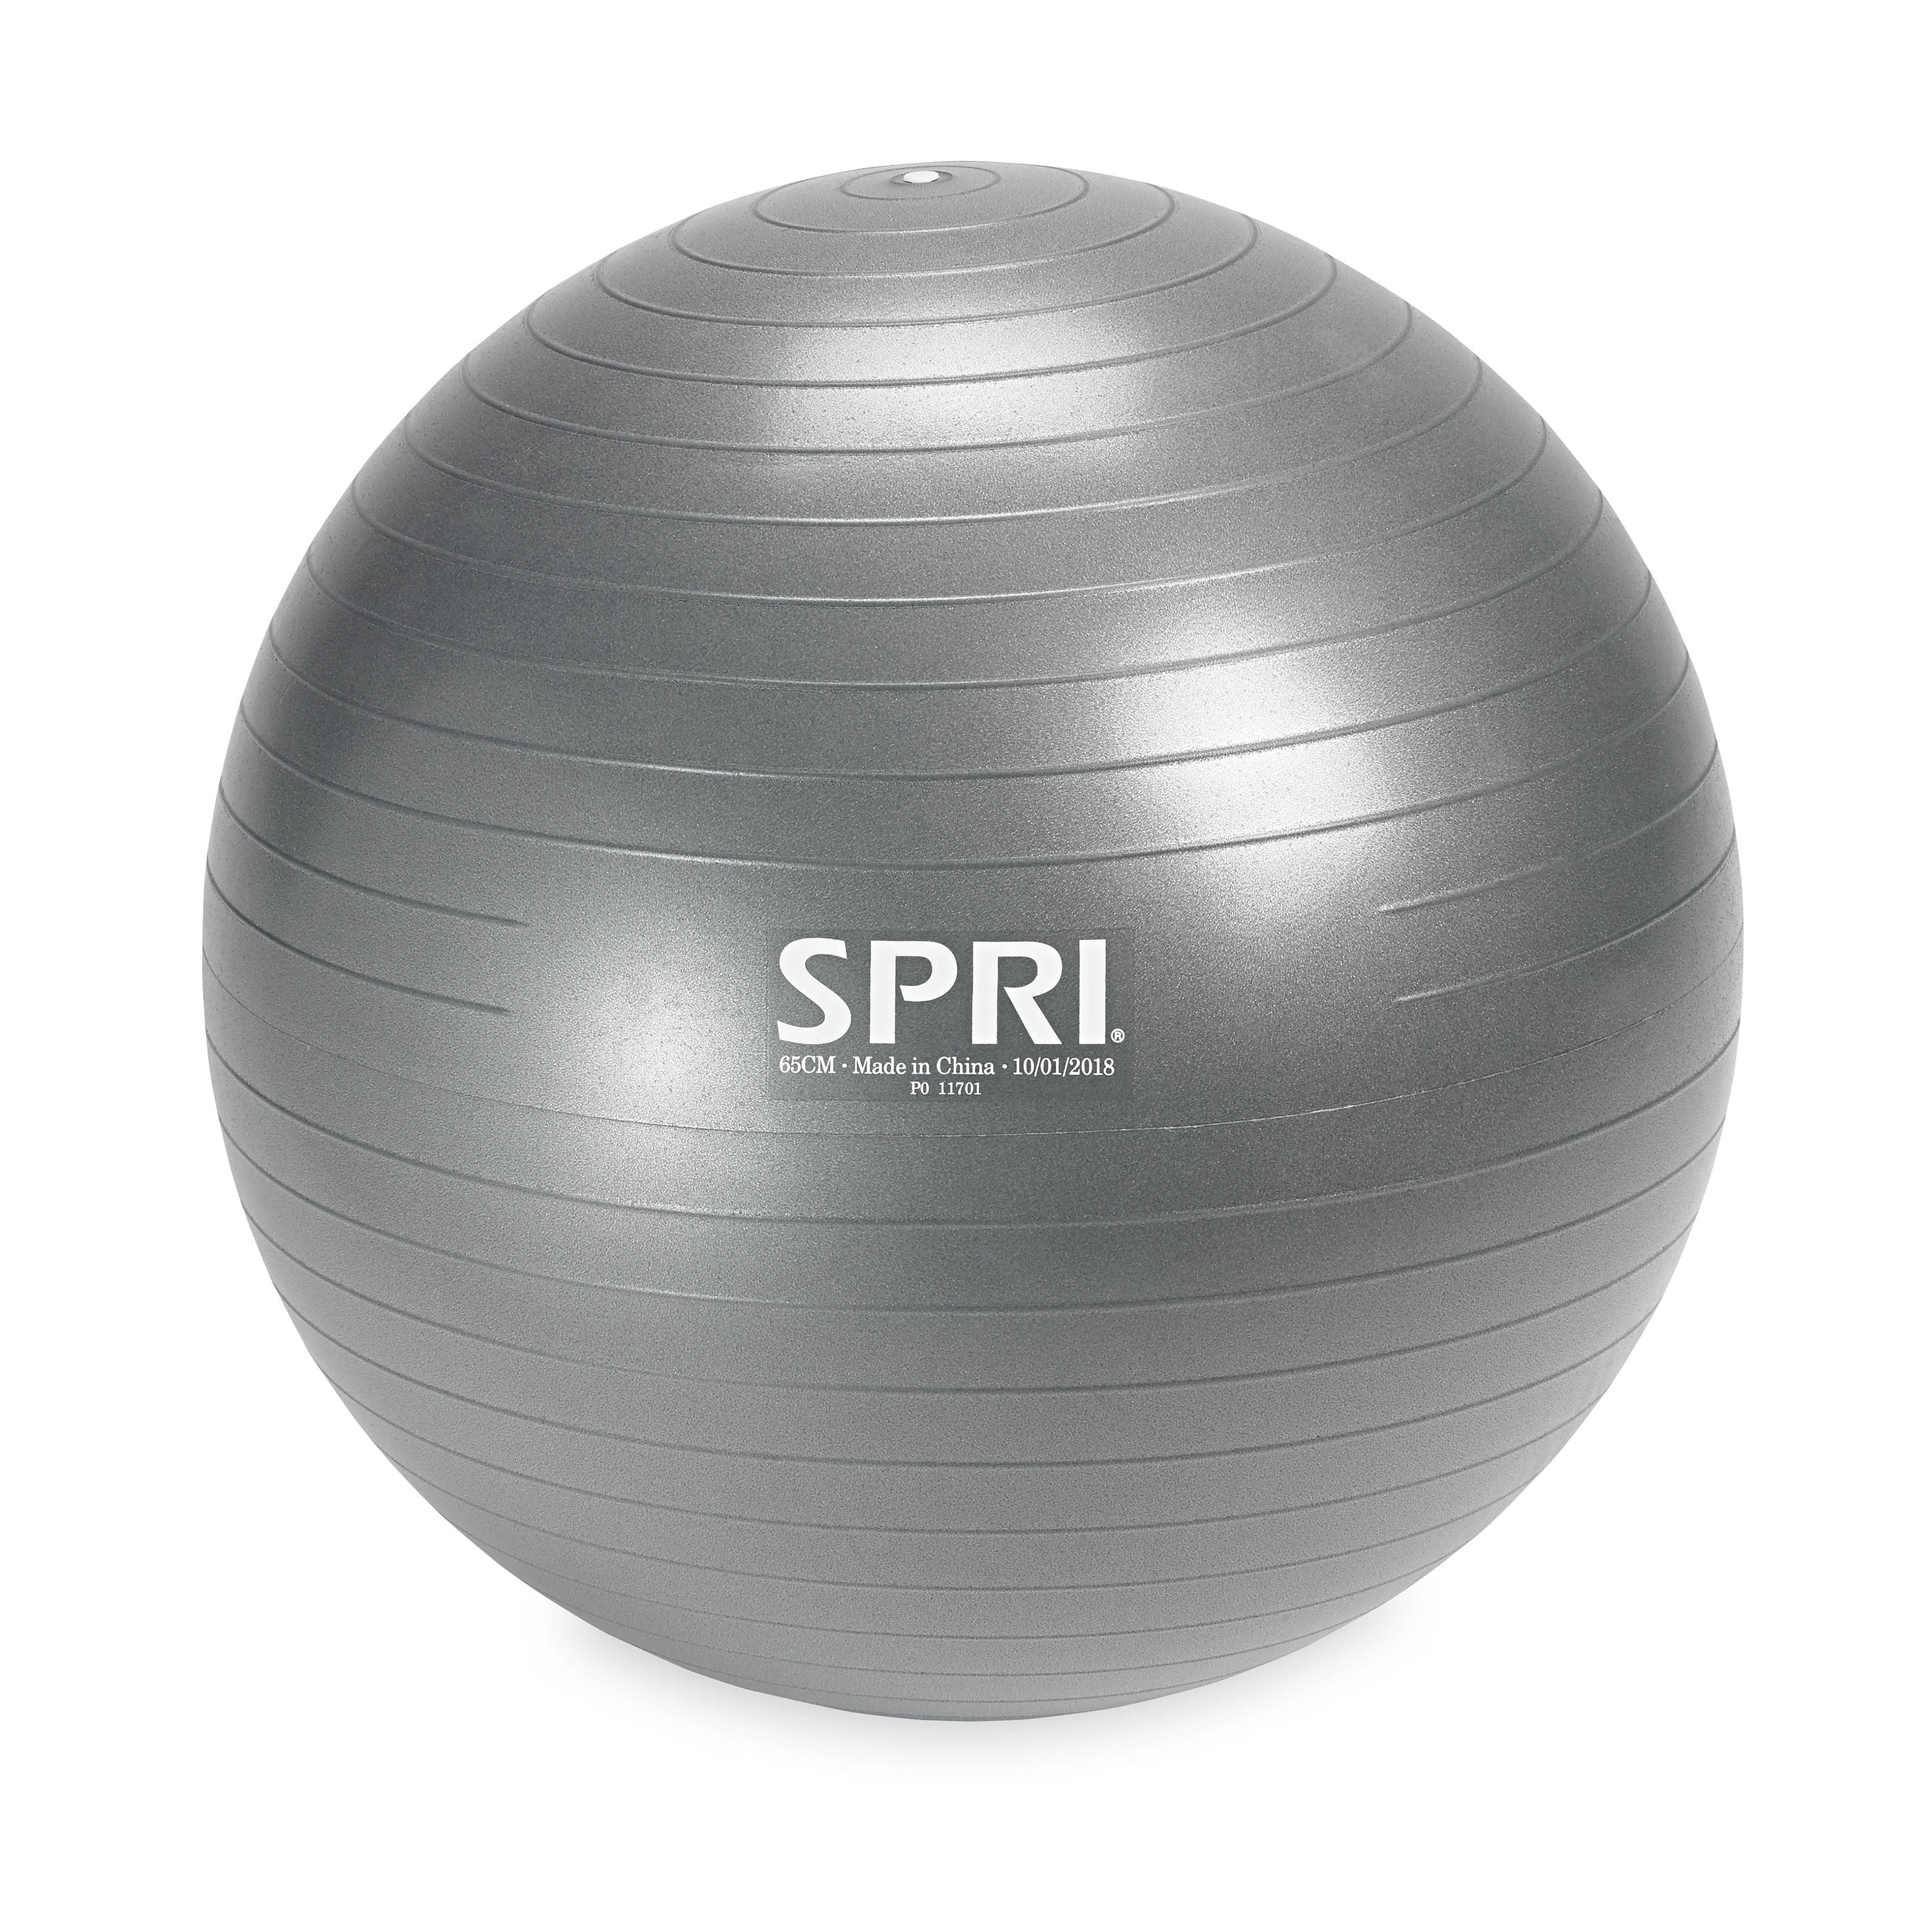 spri exercise ball